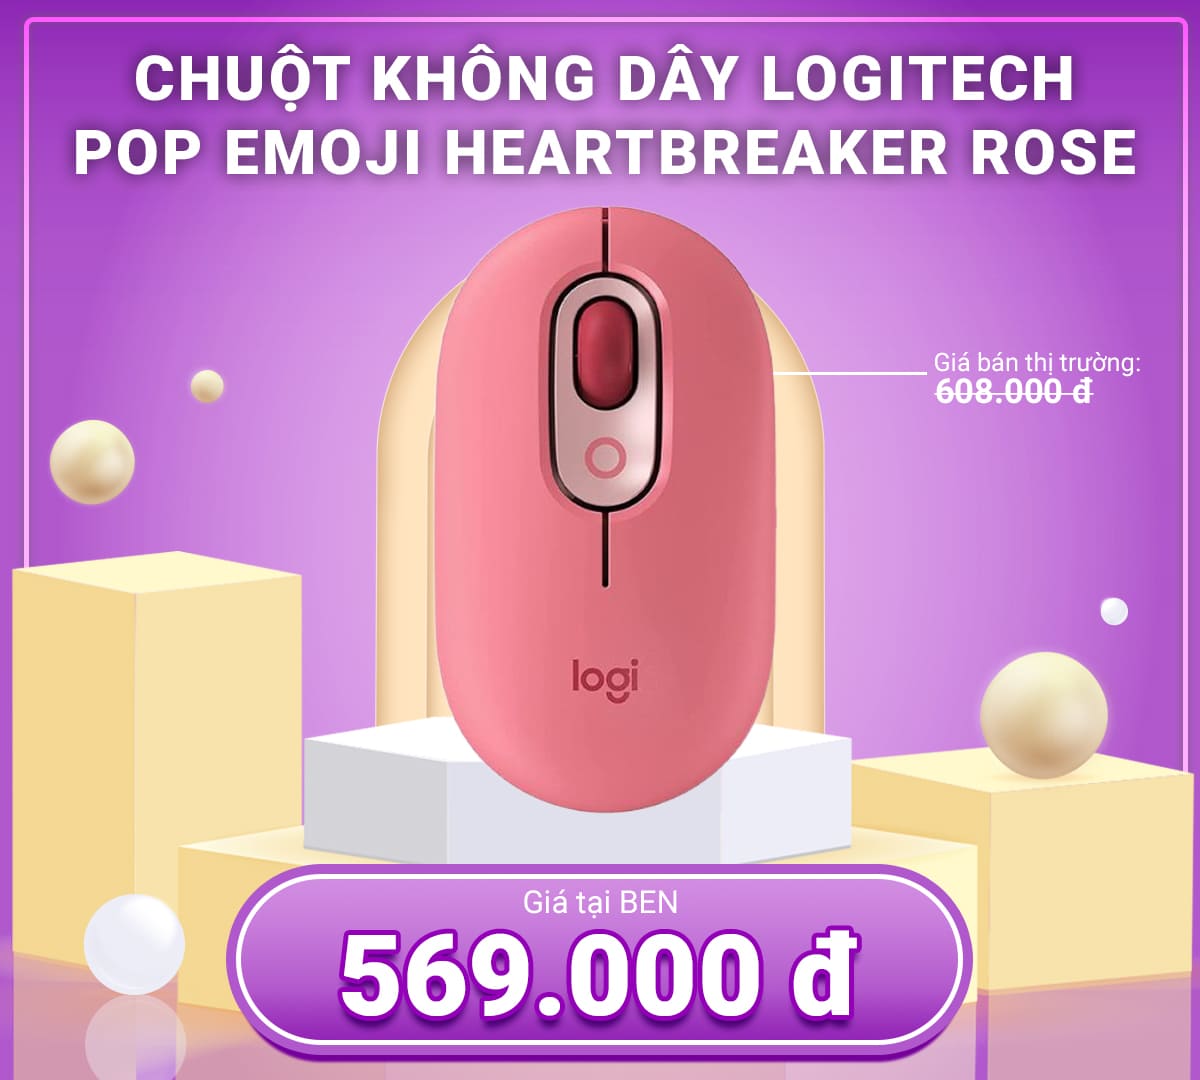 Pop Emoji HeartBreaker Rose